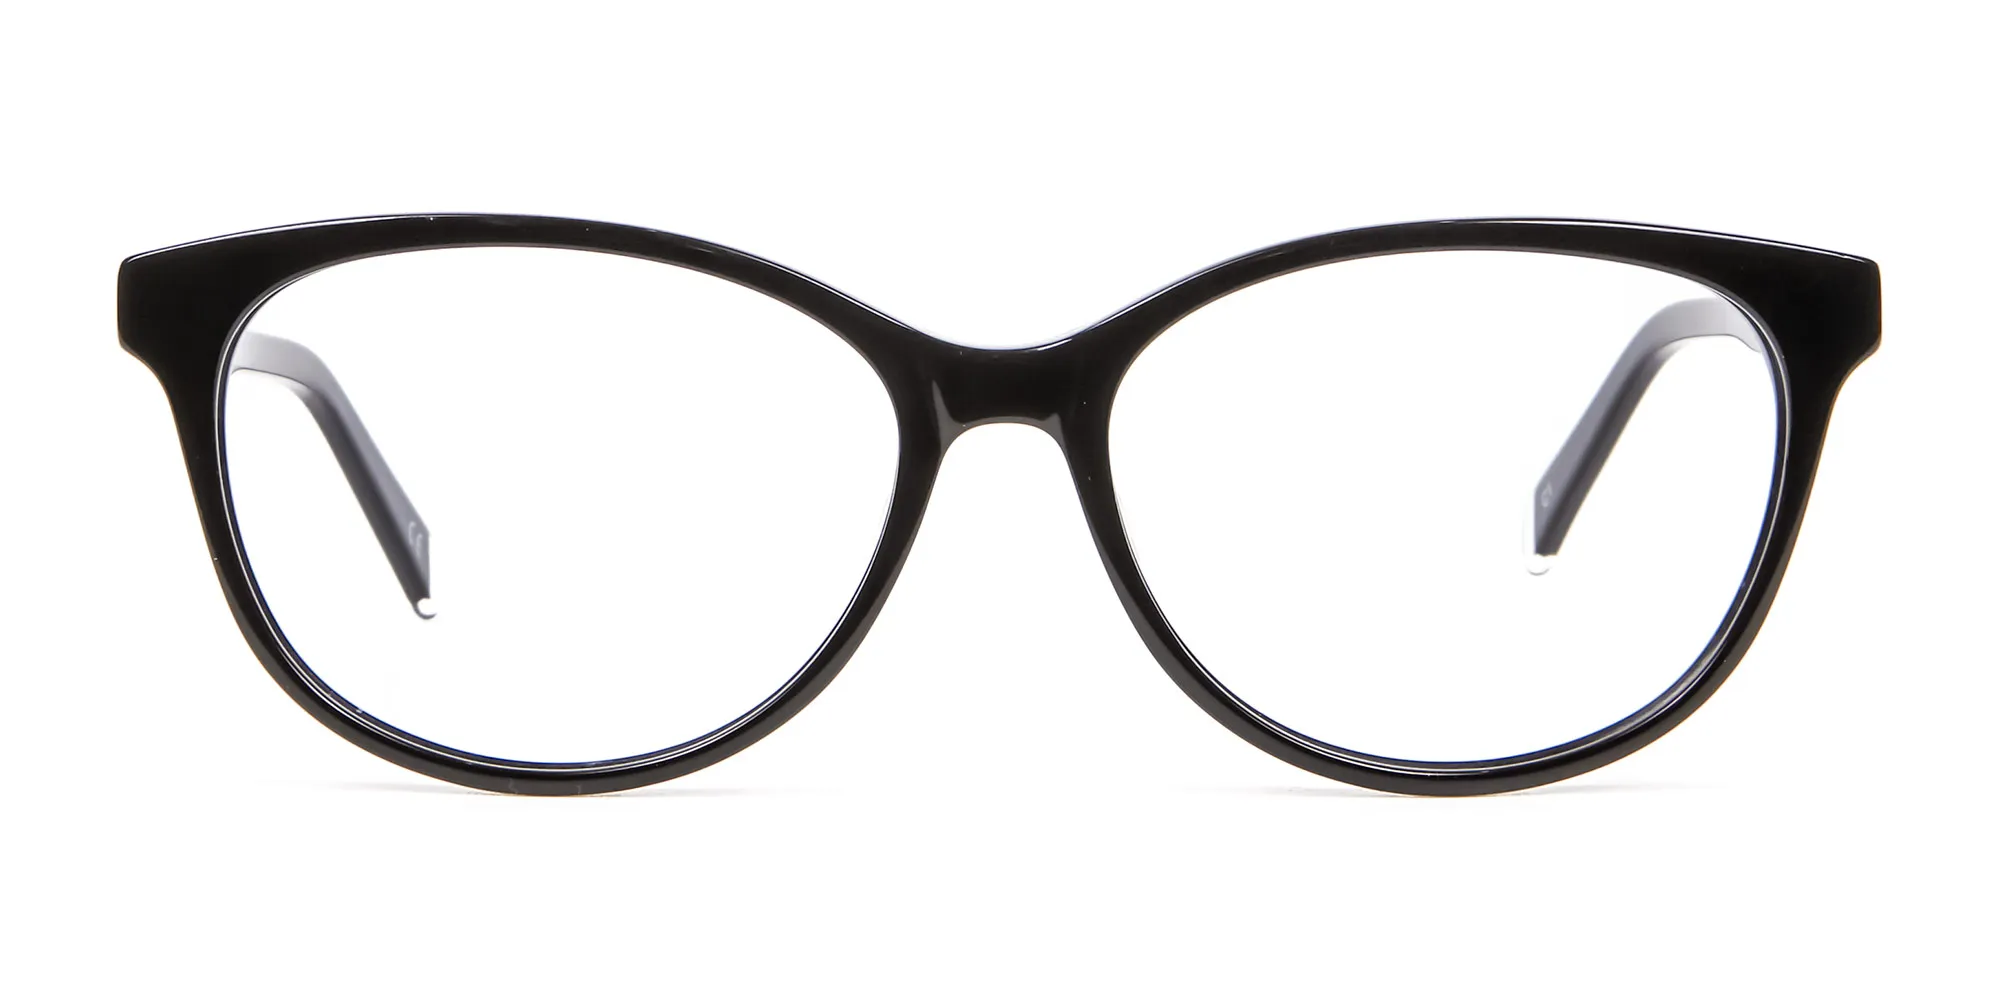 Black Cat Eye Glasses - 1